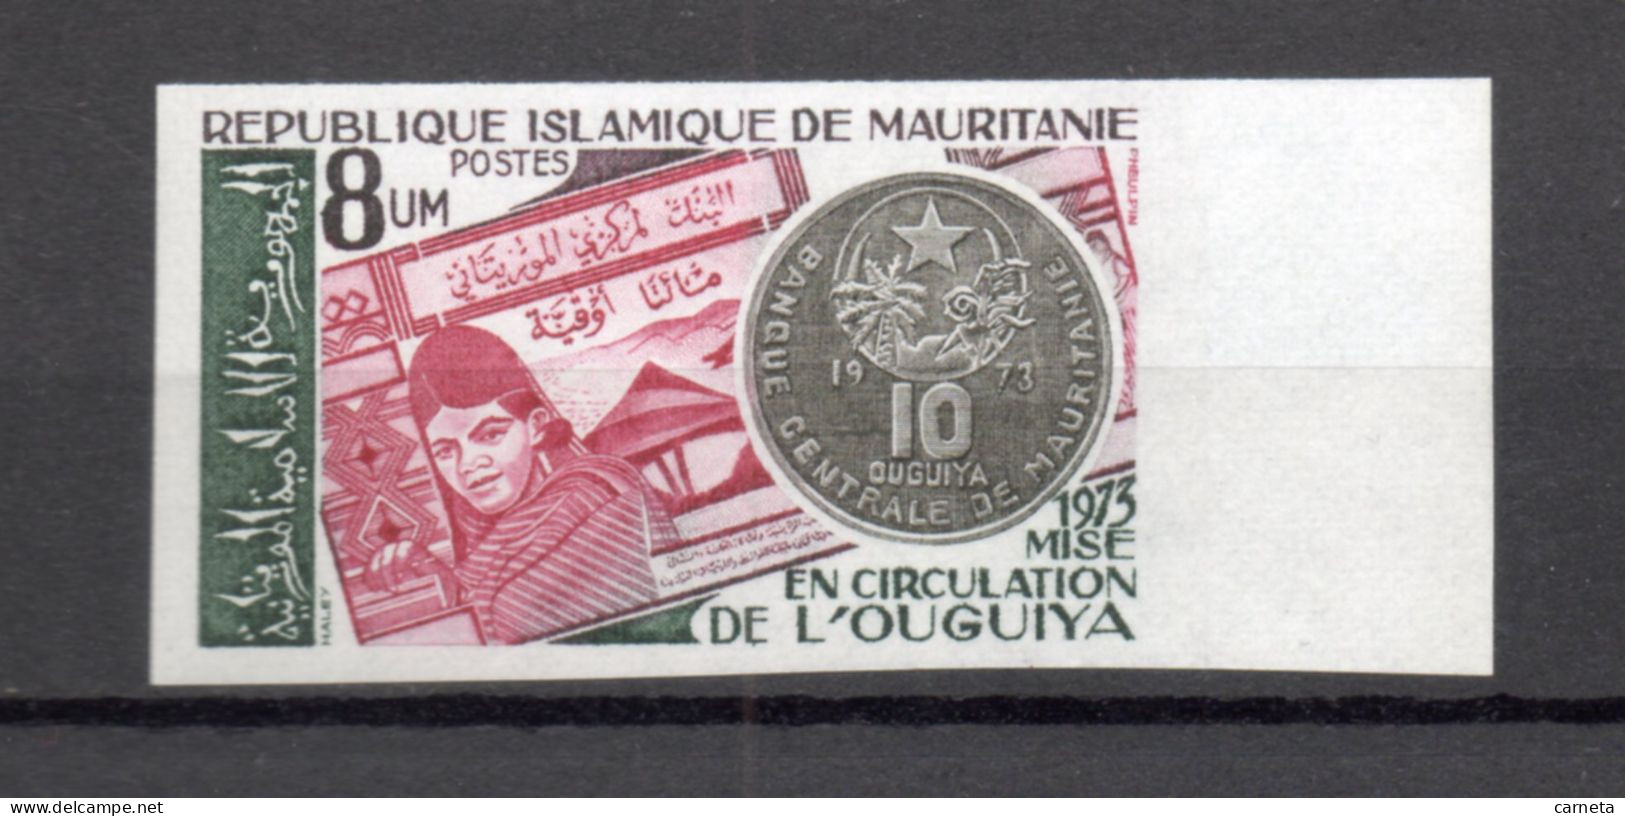 MAURITANIE    N° 322  NON DENTELE    NEUF SANS CHARNIERE   COTE ? €    MONNAIE - Mauritania (1960-...)